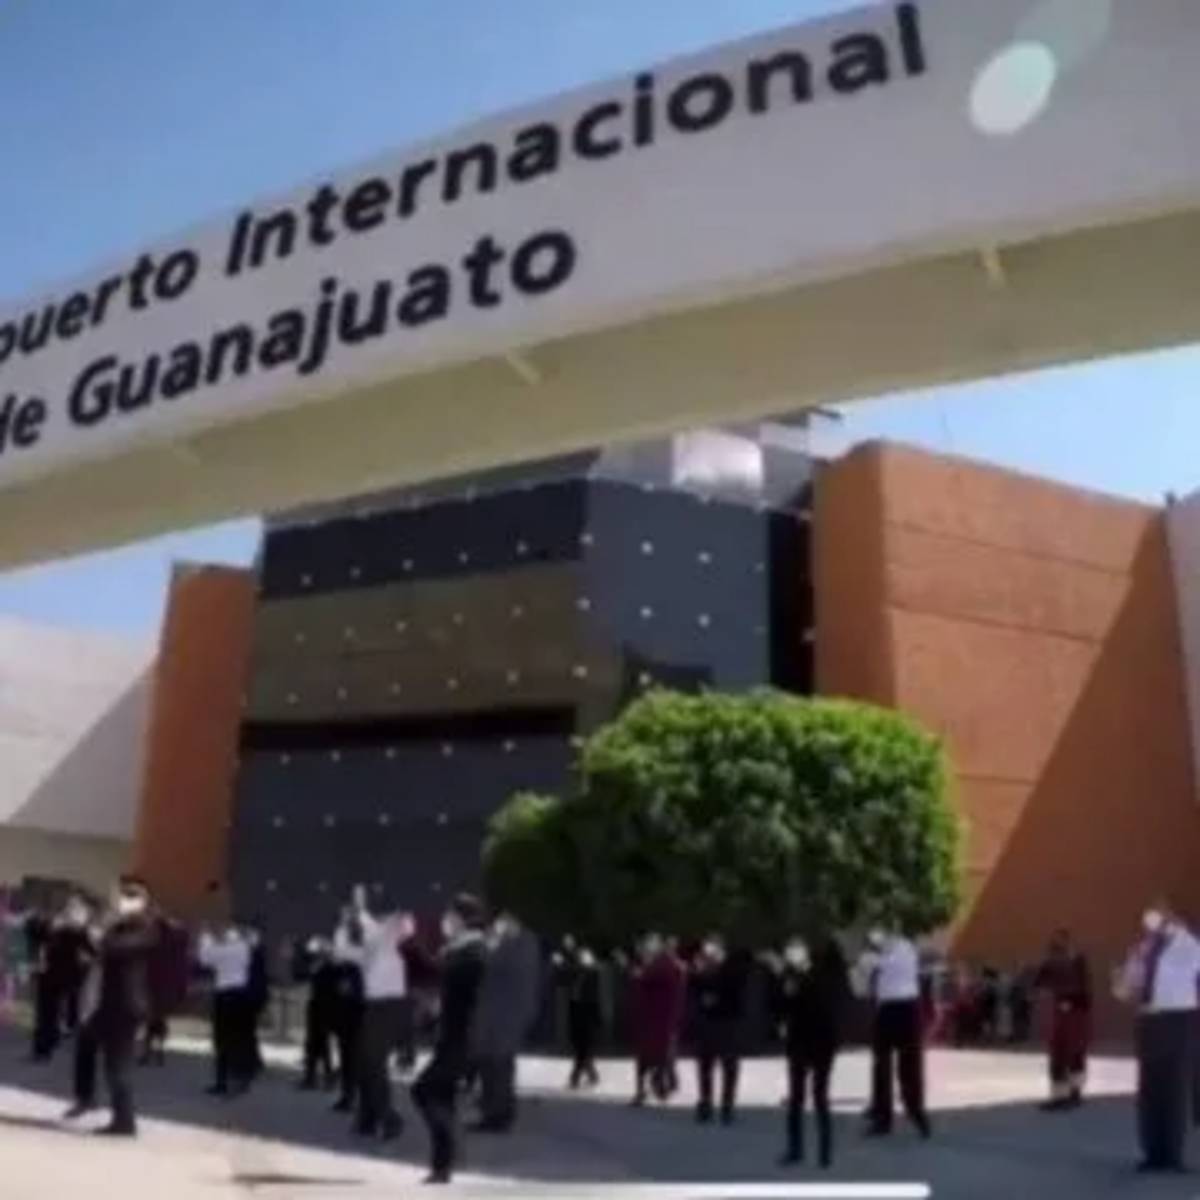 Imágenes del Aeropuerto Internacional de Guanajuato son compartidas en un video donde pilotos y sobrecargos bailan el Jerusalema Challenge.